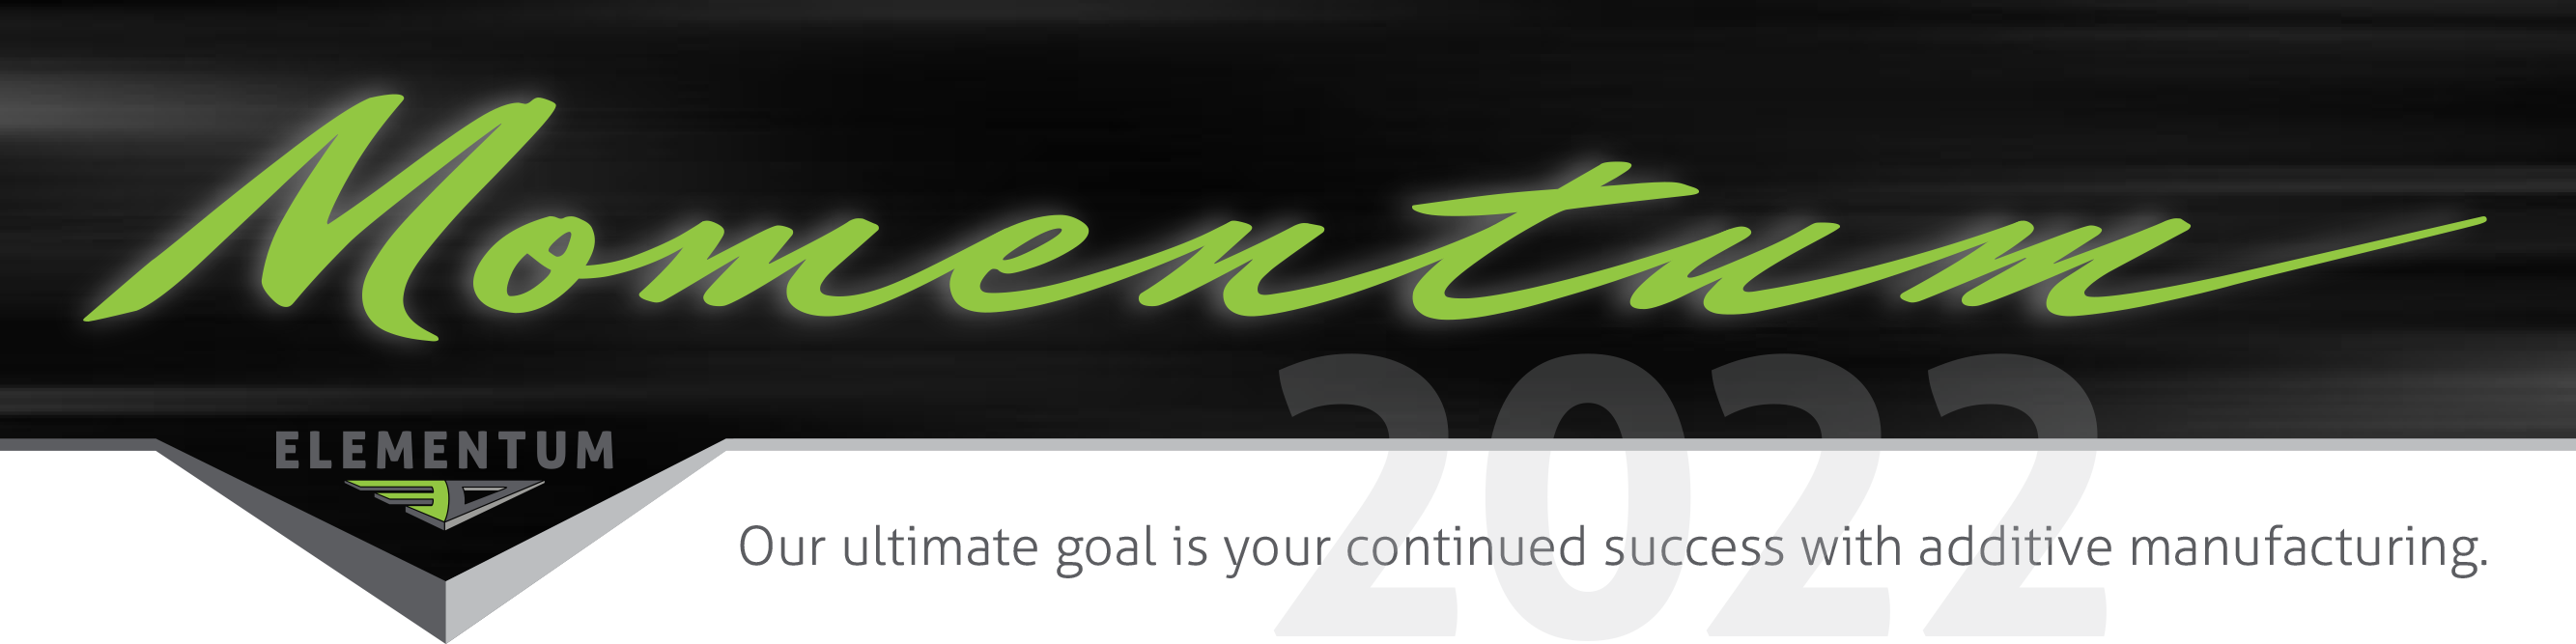 2022 Momentum Newsletter